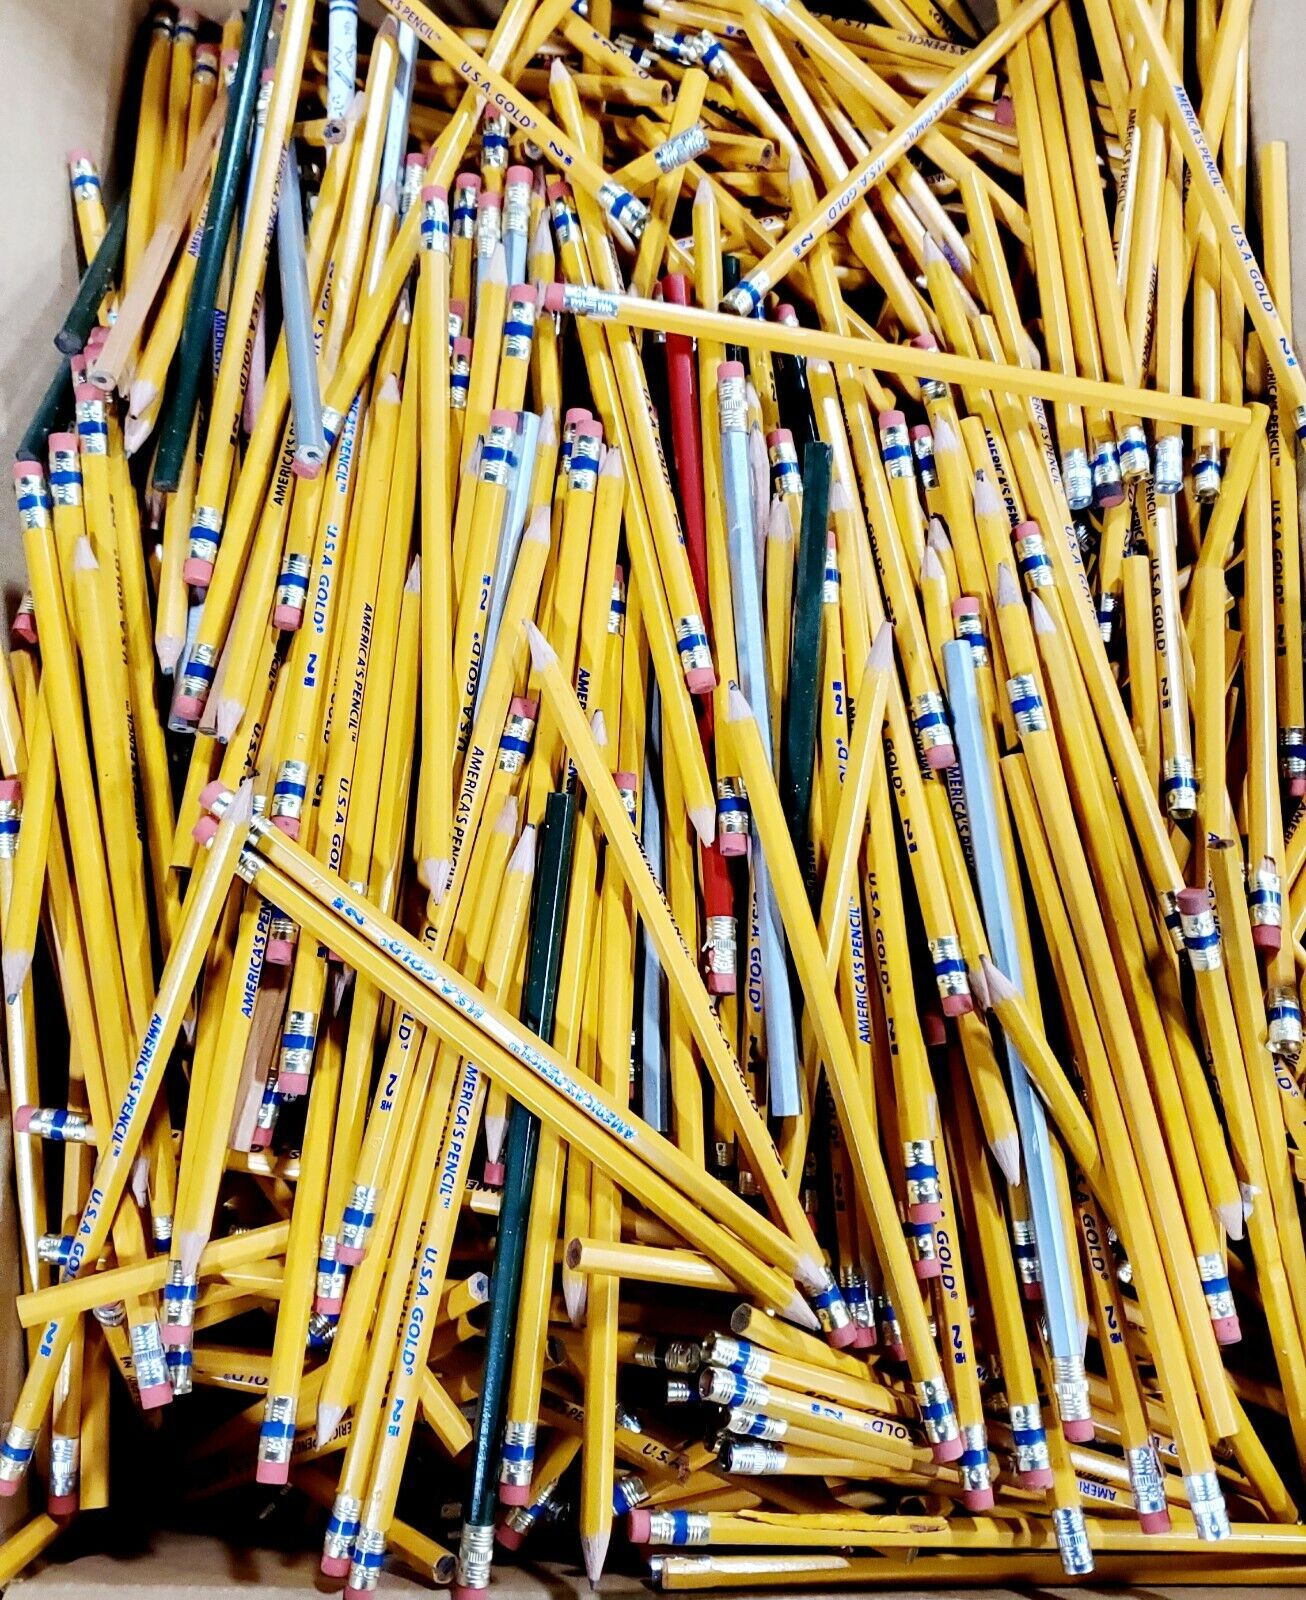 Lot of 576 Pencils - Factory Seconds. No. 2 Pencils